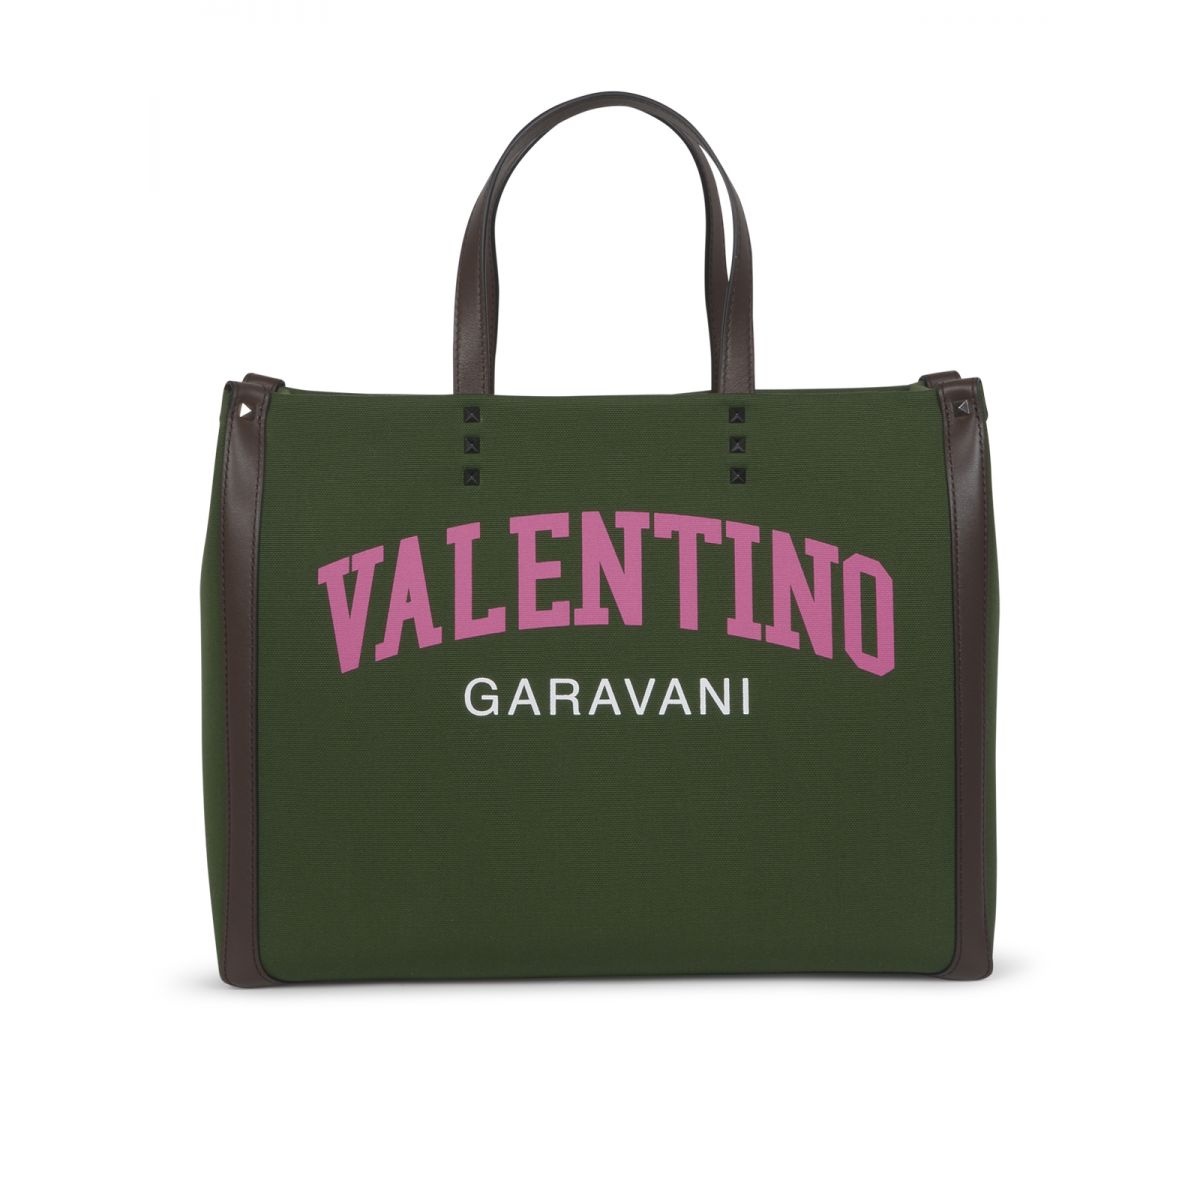 Valentino - Garavani University shopper bag